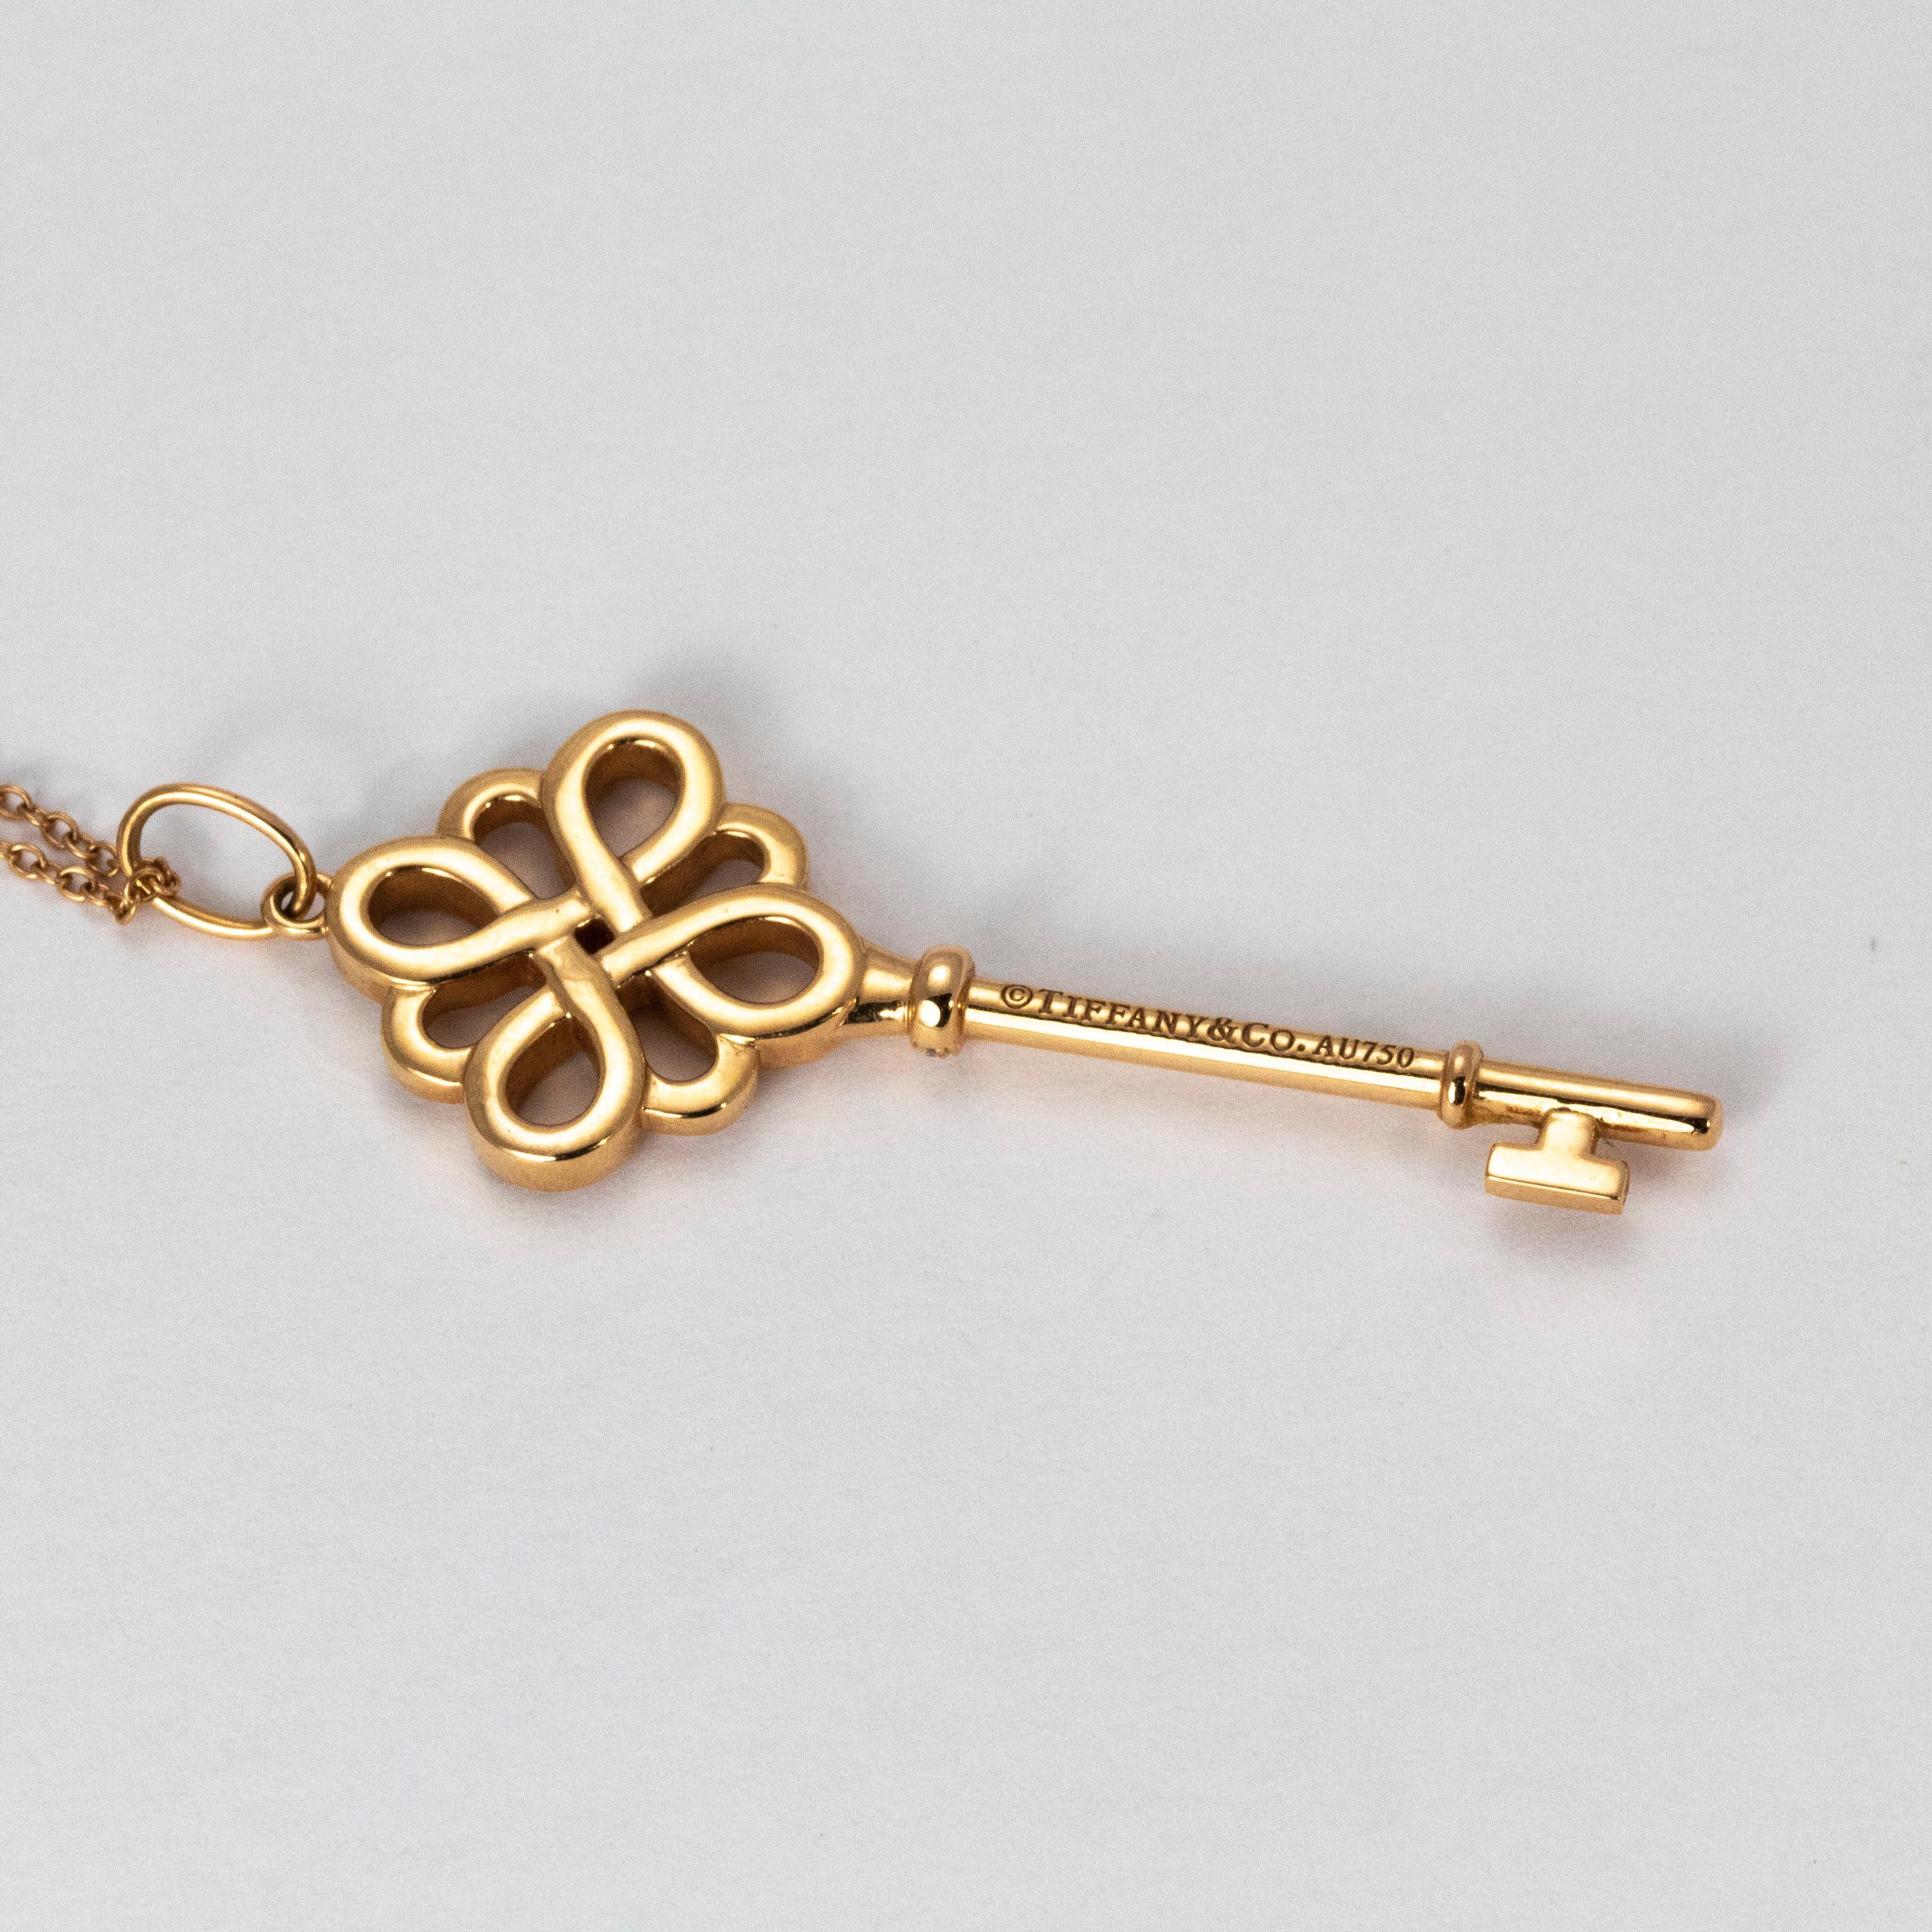 tiffany knot key pendant